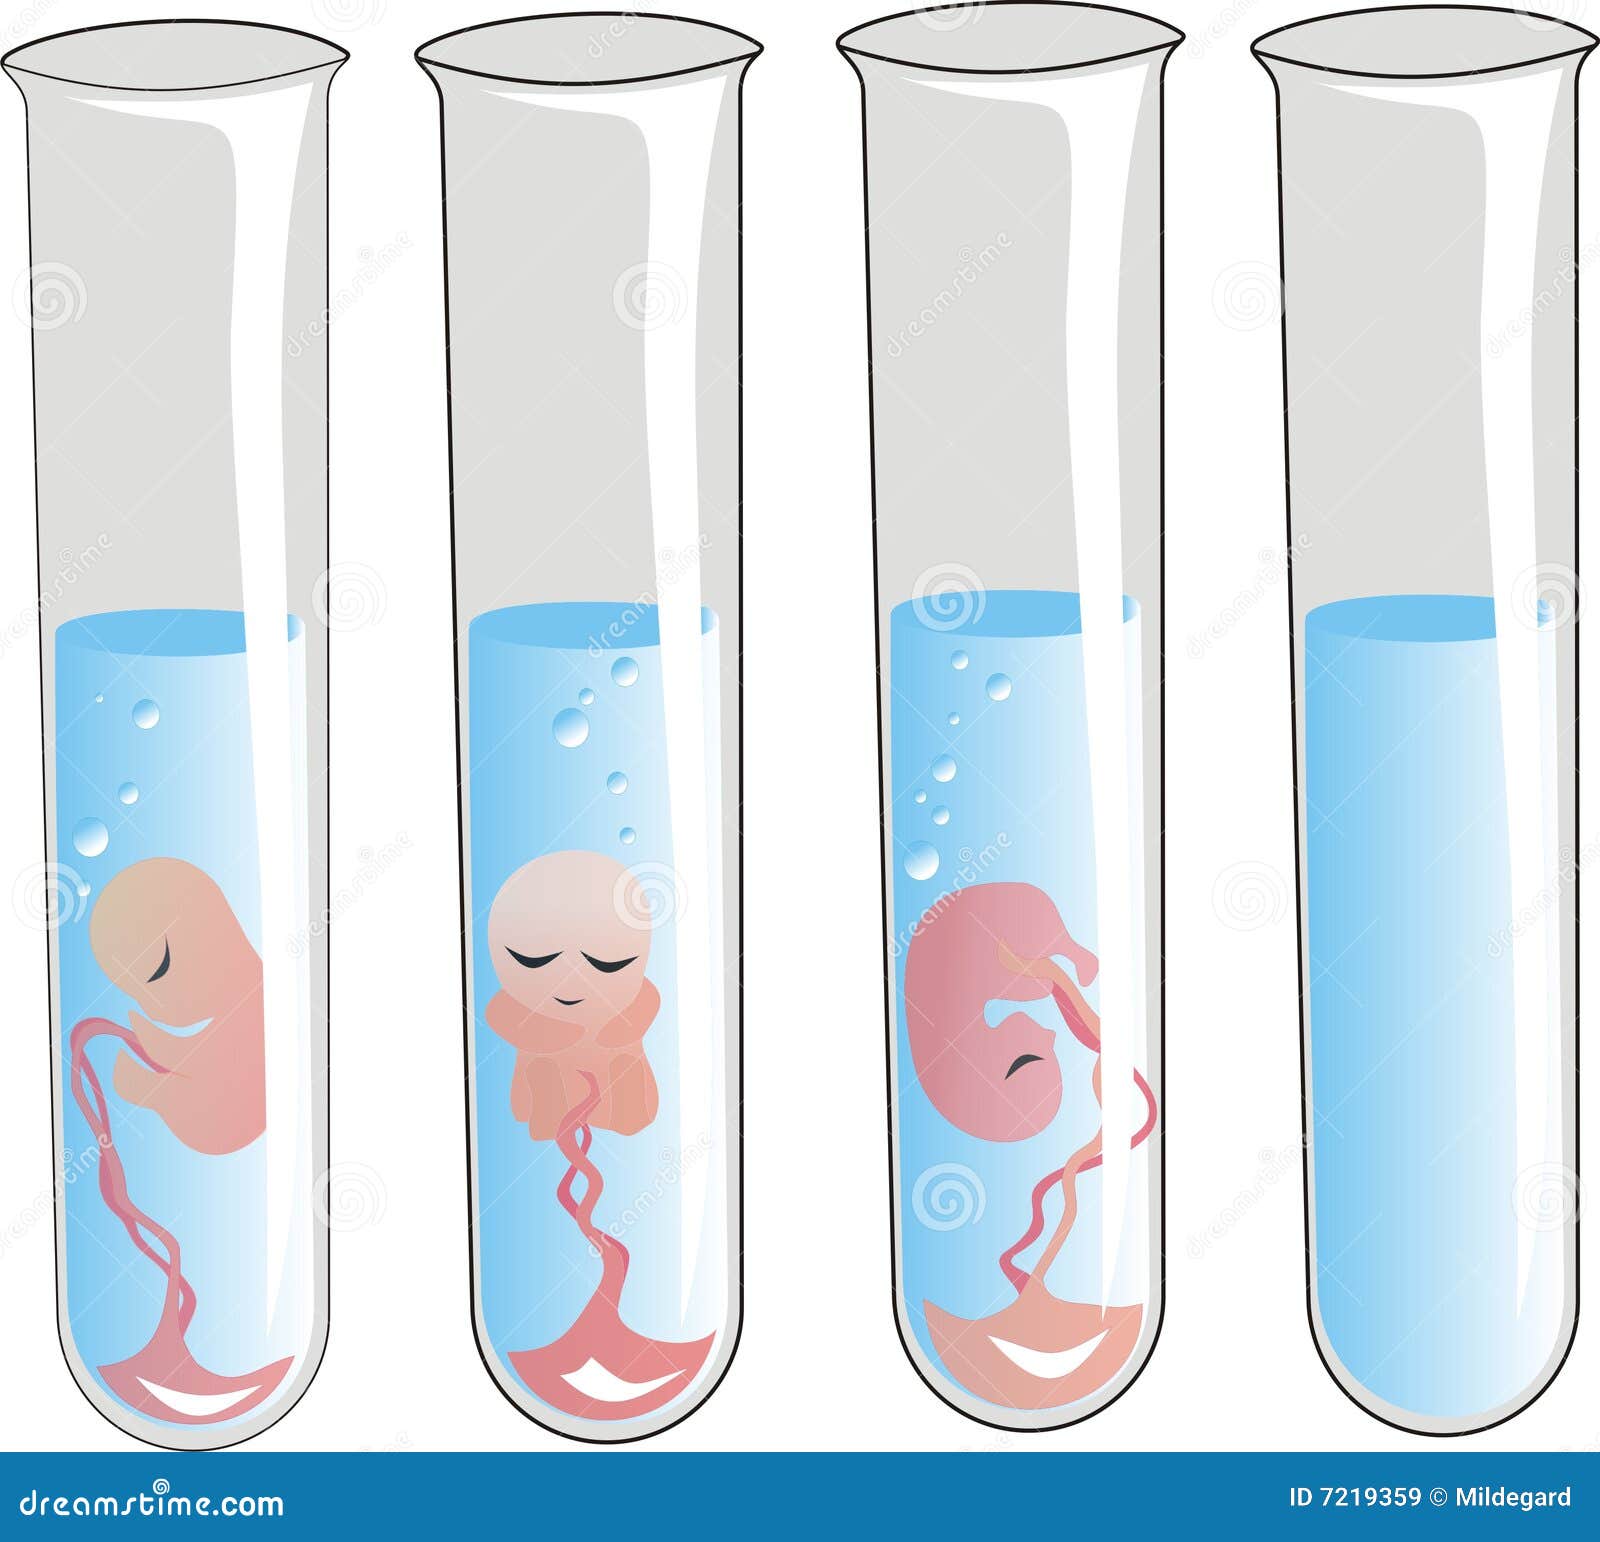 Image result for टेस्ट ट्यूब बेबी